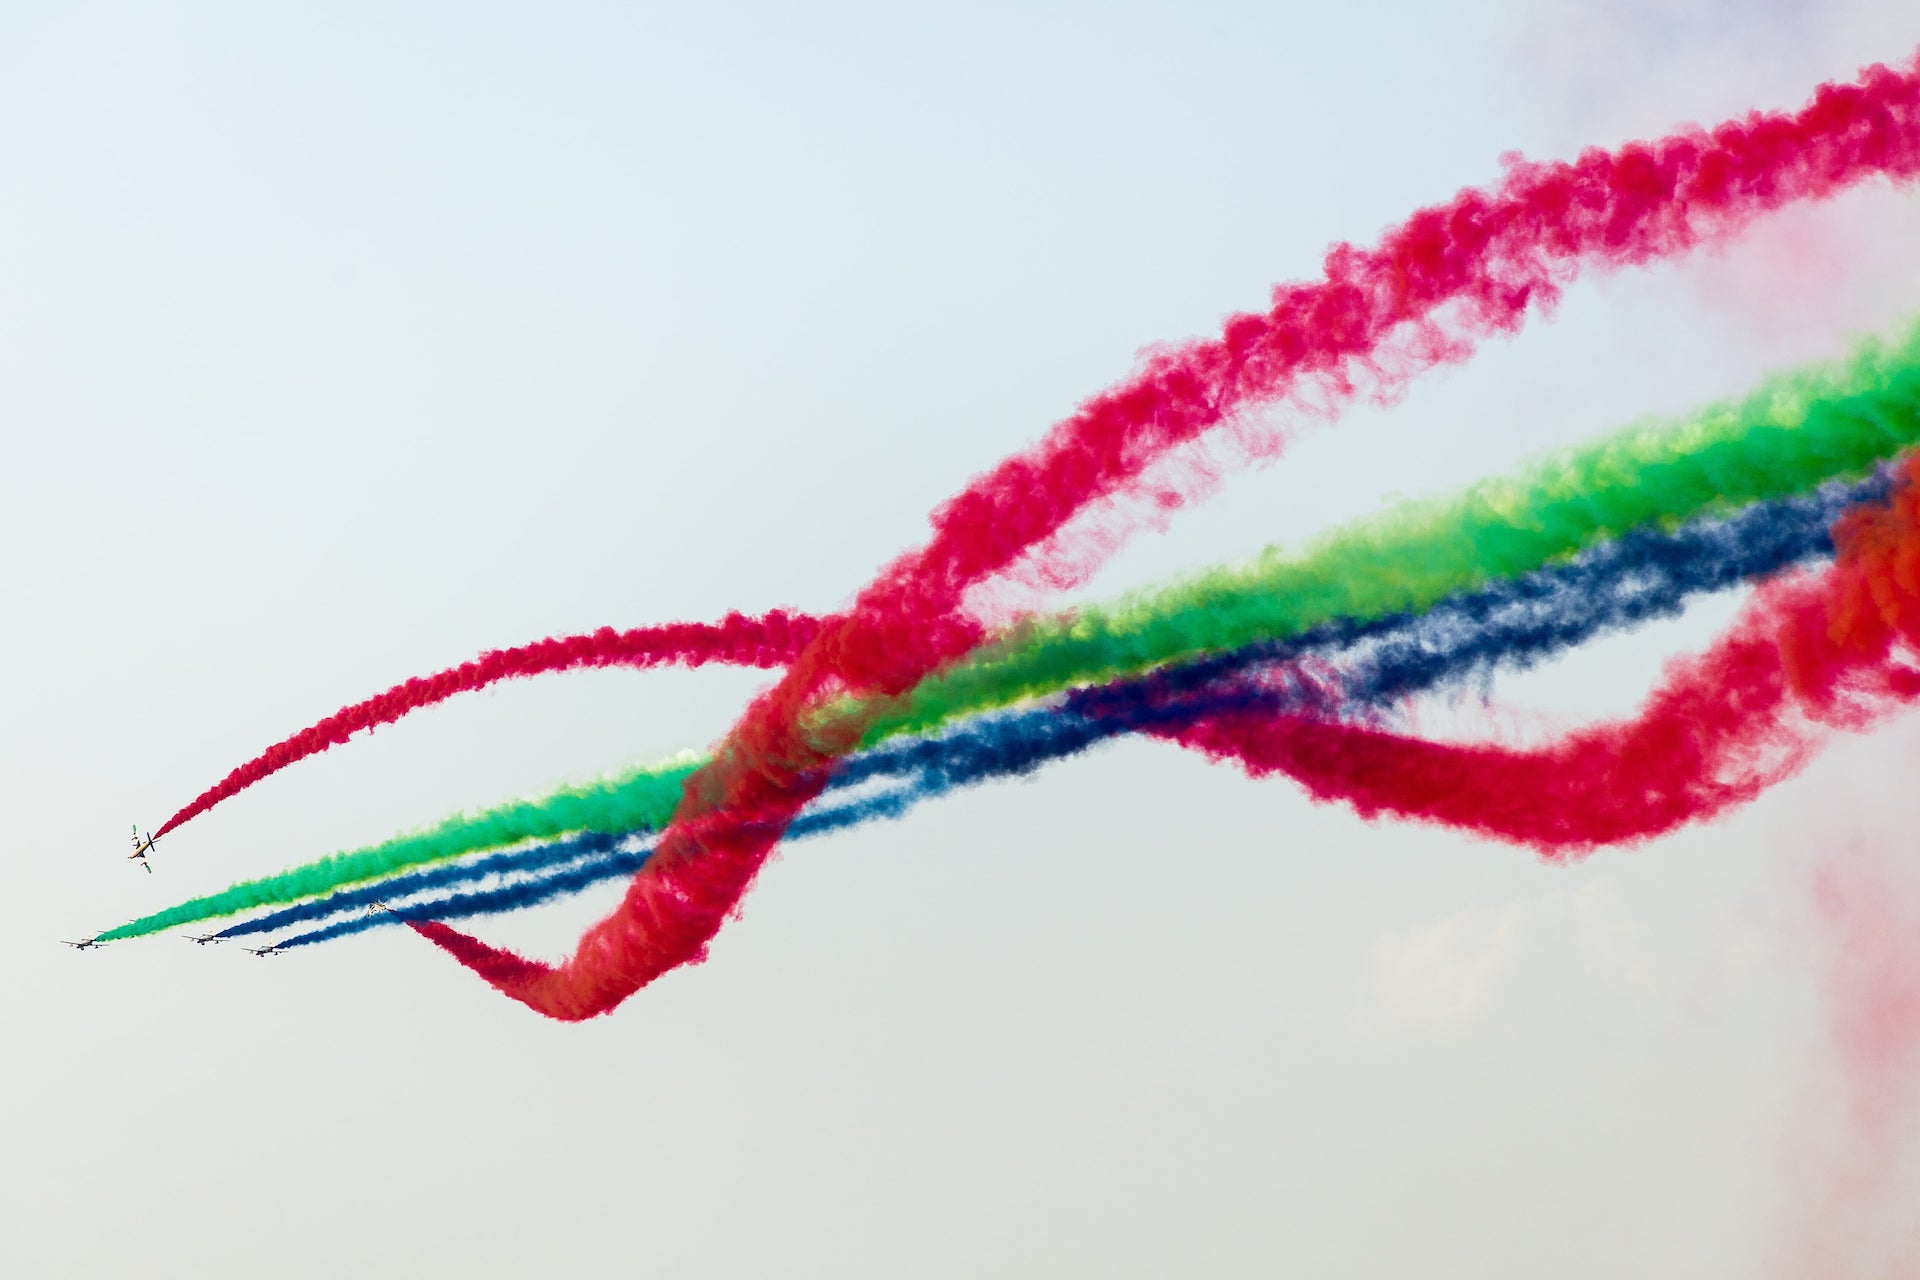 L'équipe d'Al Fursan montre ses étonnantes compétences avec des cigarettes colorées au salon aéronautique de Dubaï.